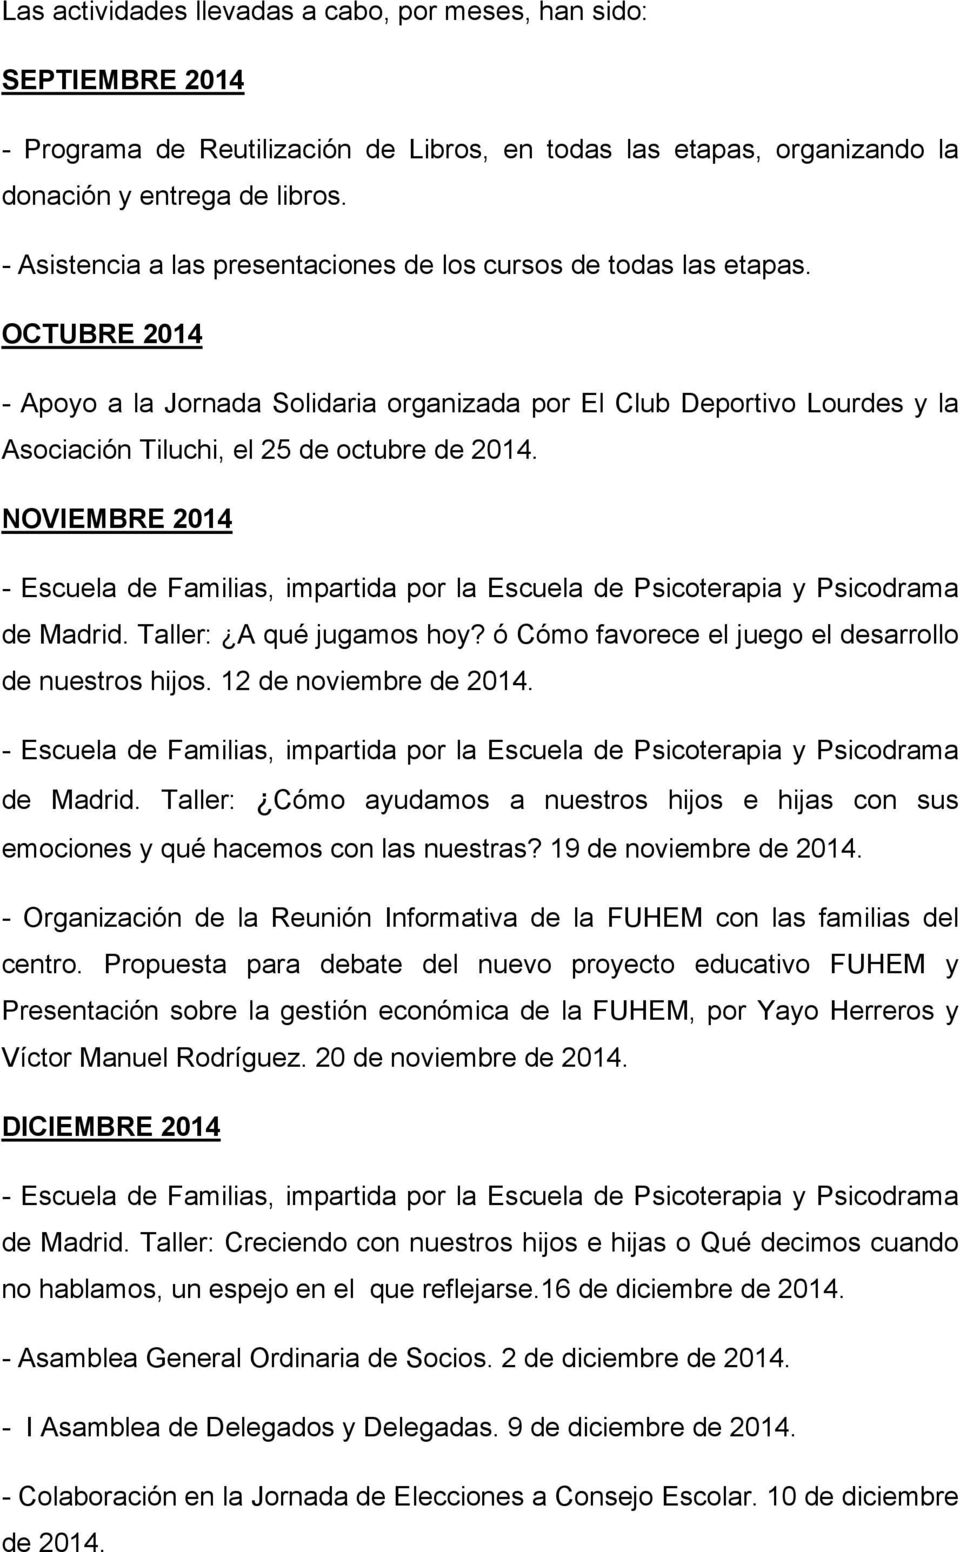 OCTUBRE 2014 - Apoyo a la Jornada Solidaria organizada por El Club Deportivo Lourdes y la Asociación Tiluchi, el 25 de octubre de 2014.